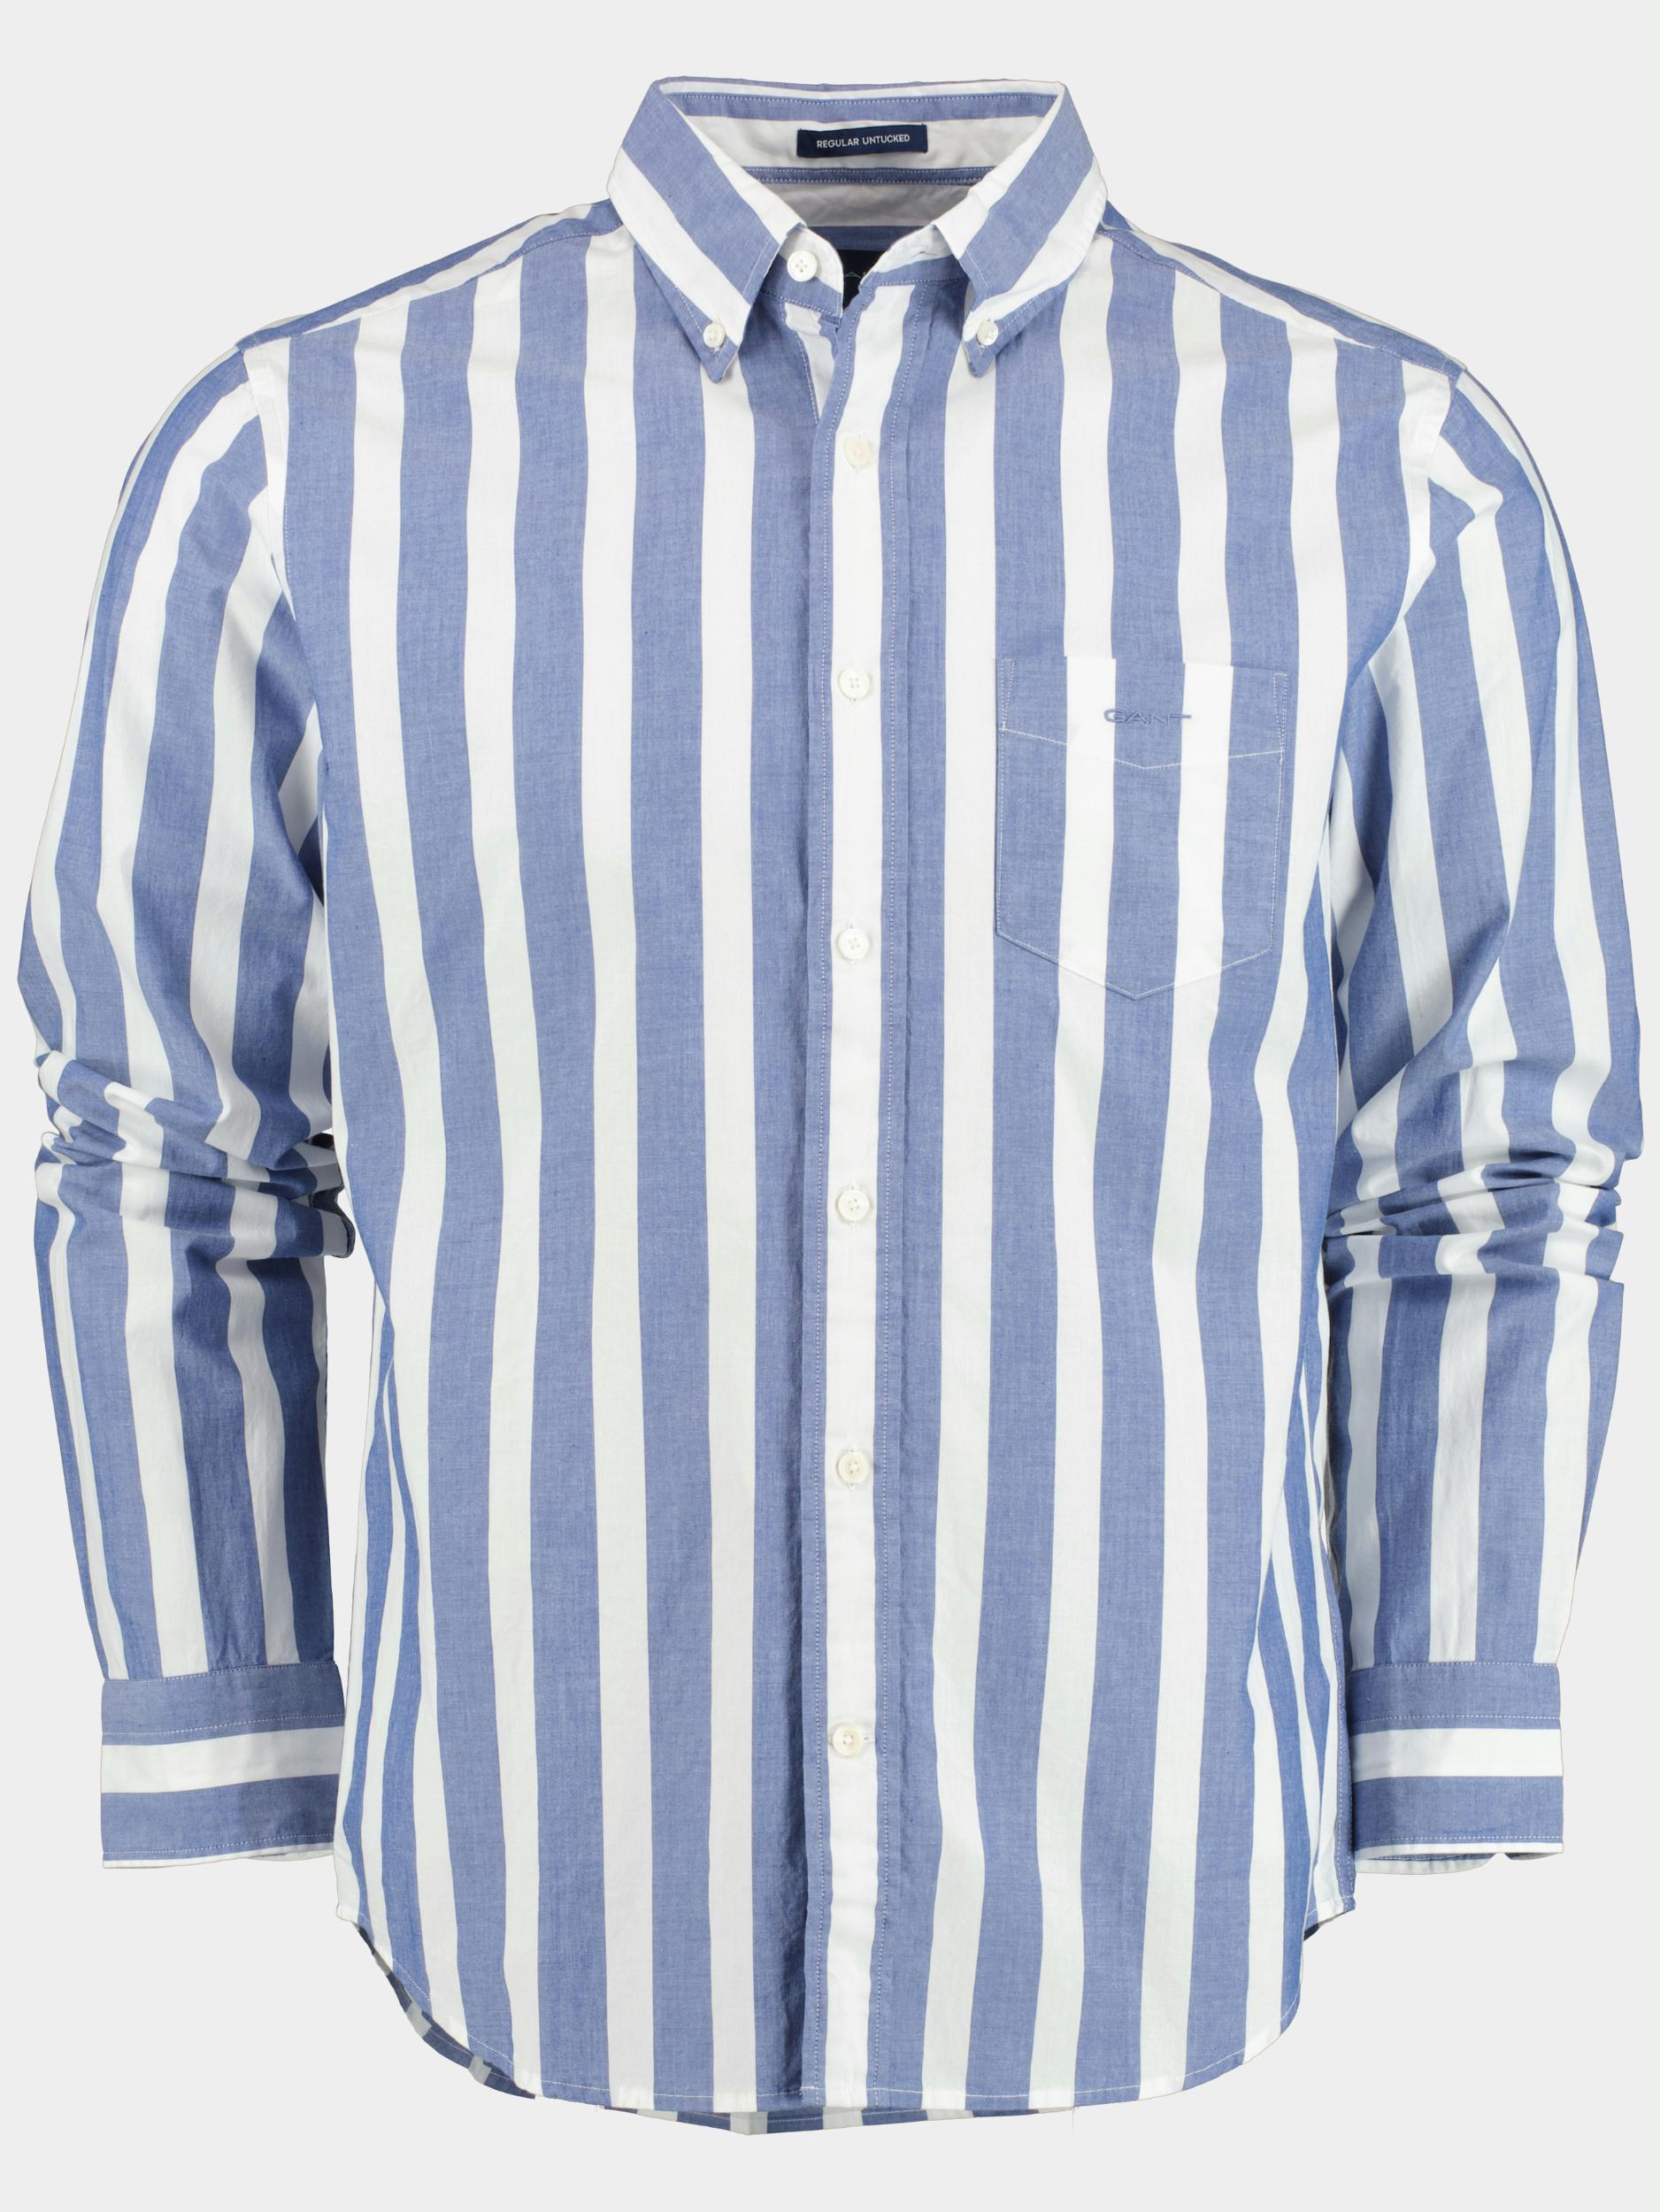 Gant Casual hemd lange mouw Blauw Reg UT Wide Broadscloth Stripe 3230112 436